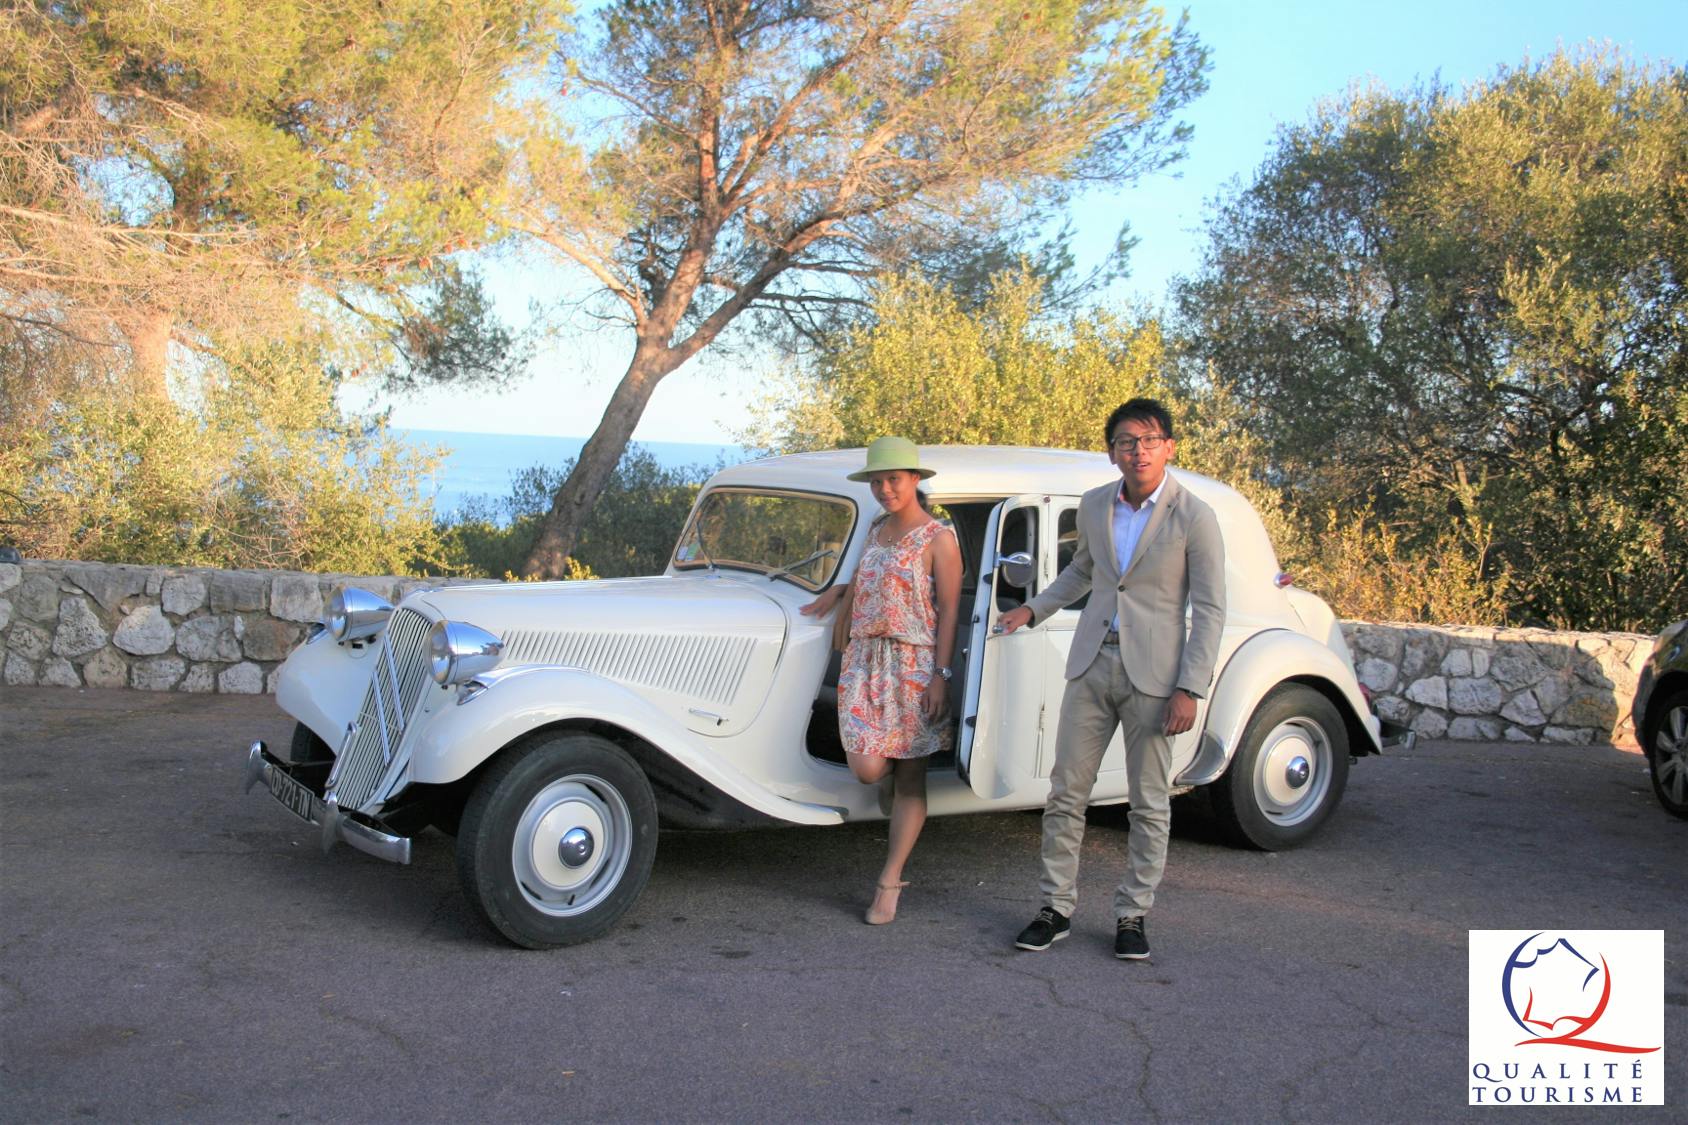 Tour particular pela Riviera Francesa em um carro antigo saindo de Cannes